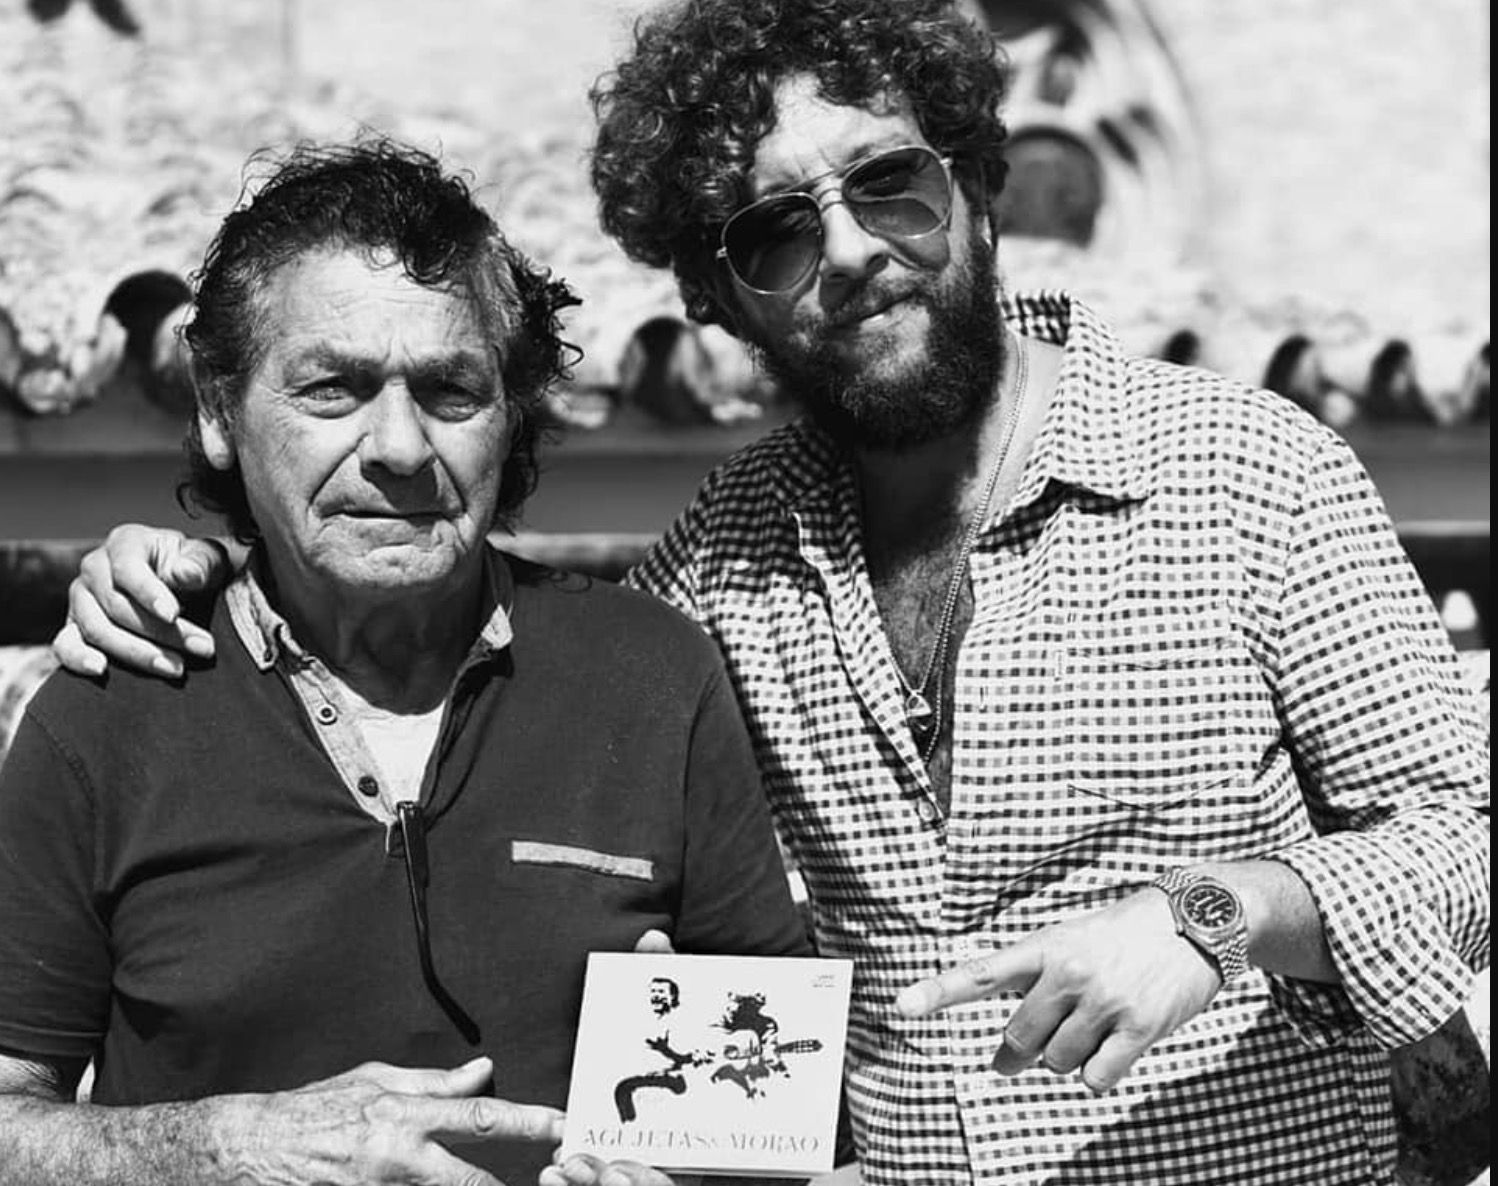 Diego Agujetas, junto a Pepe del Morao, en una imagen promocional de su último trabajo discográfico.